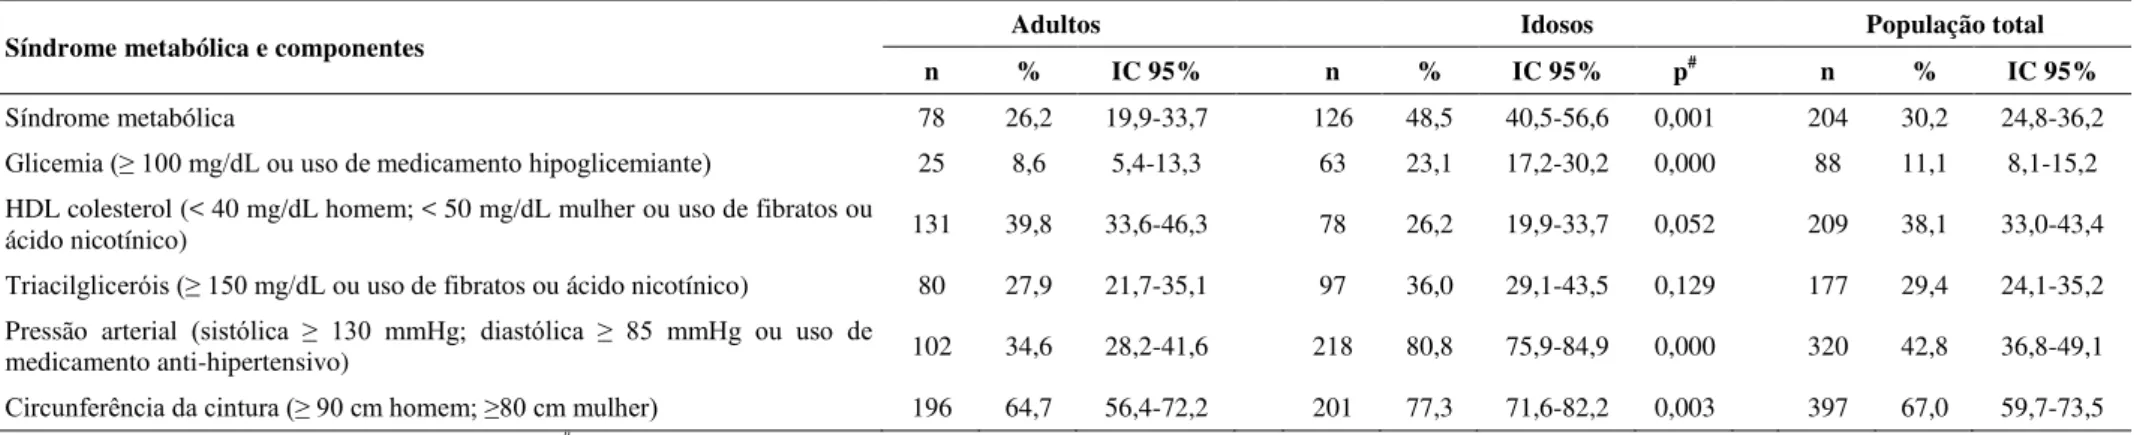 Tabela 1. Prevalência de síndrome metabólica e componentes na população total e segundo faixa etária